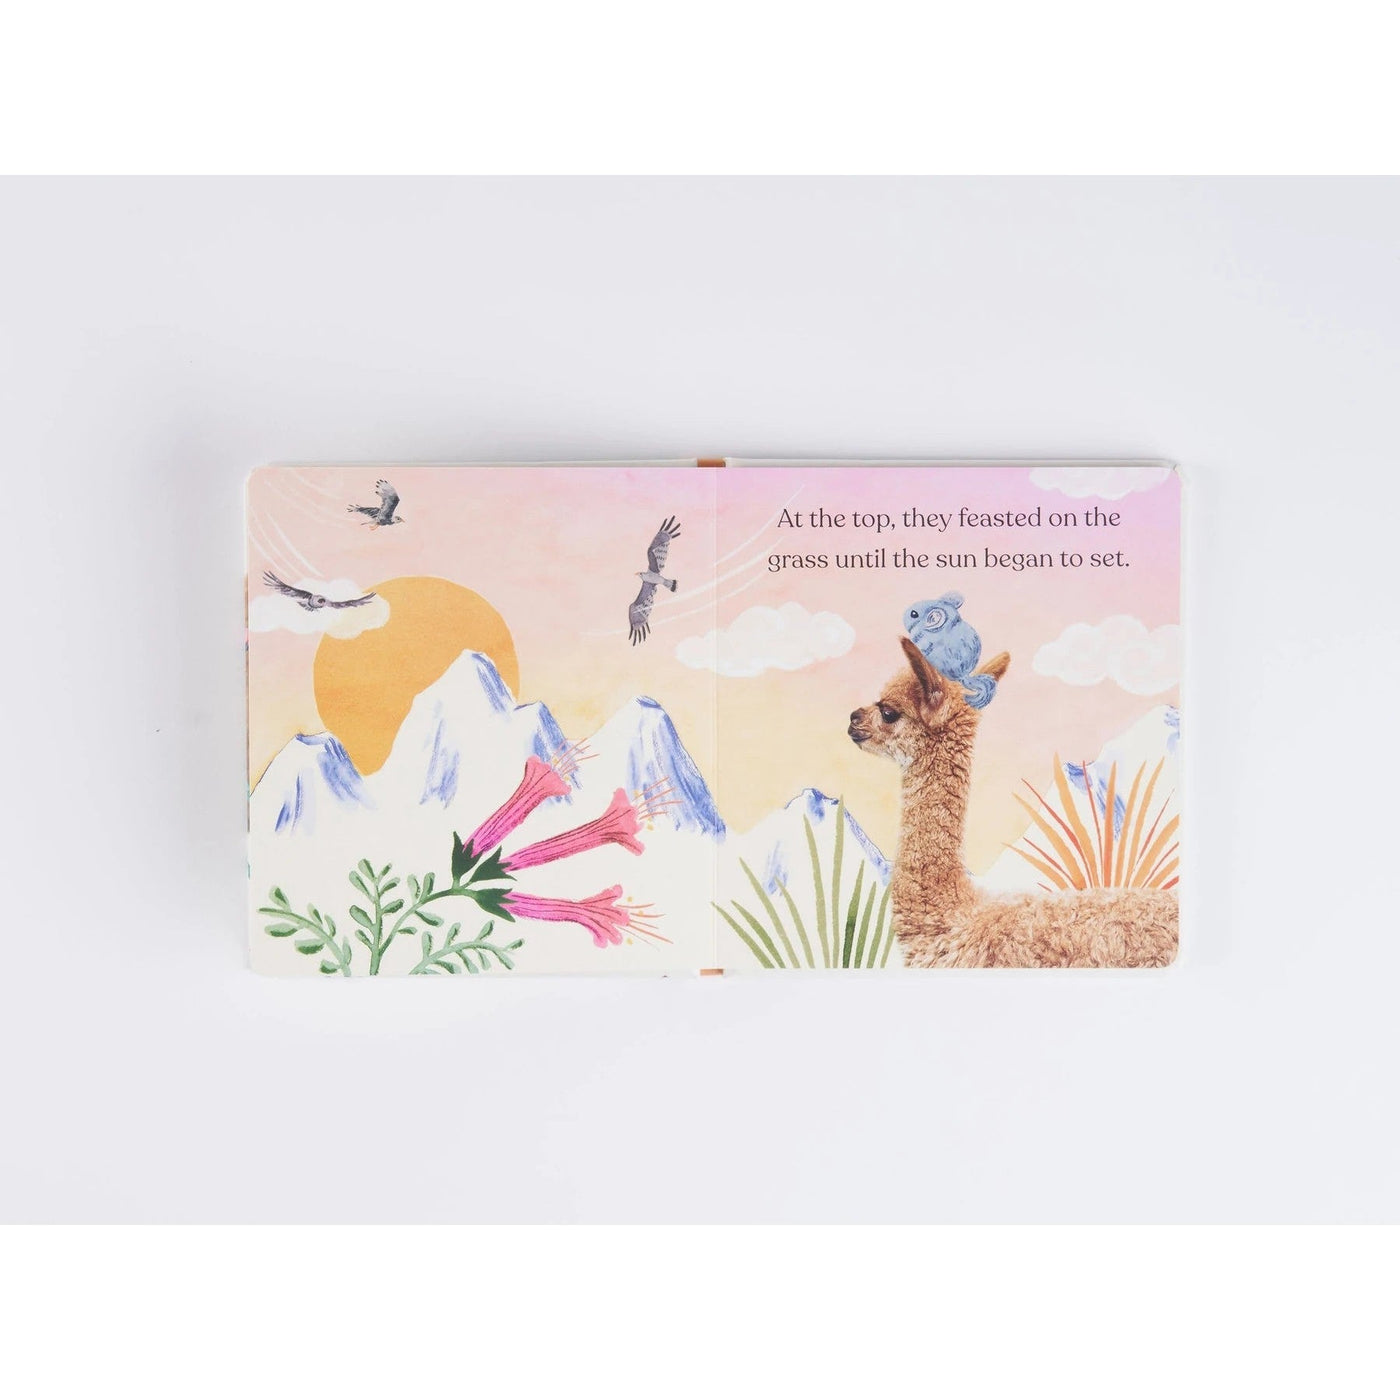 Goodnight Little Llama - A Book About Being A Good Friend - Amanda Wood & Bec Winnel & Vikki Chu